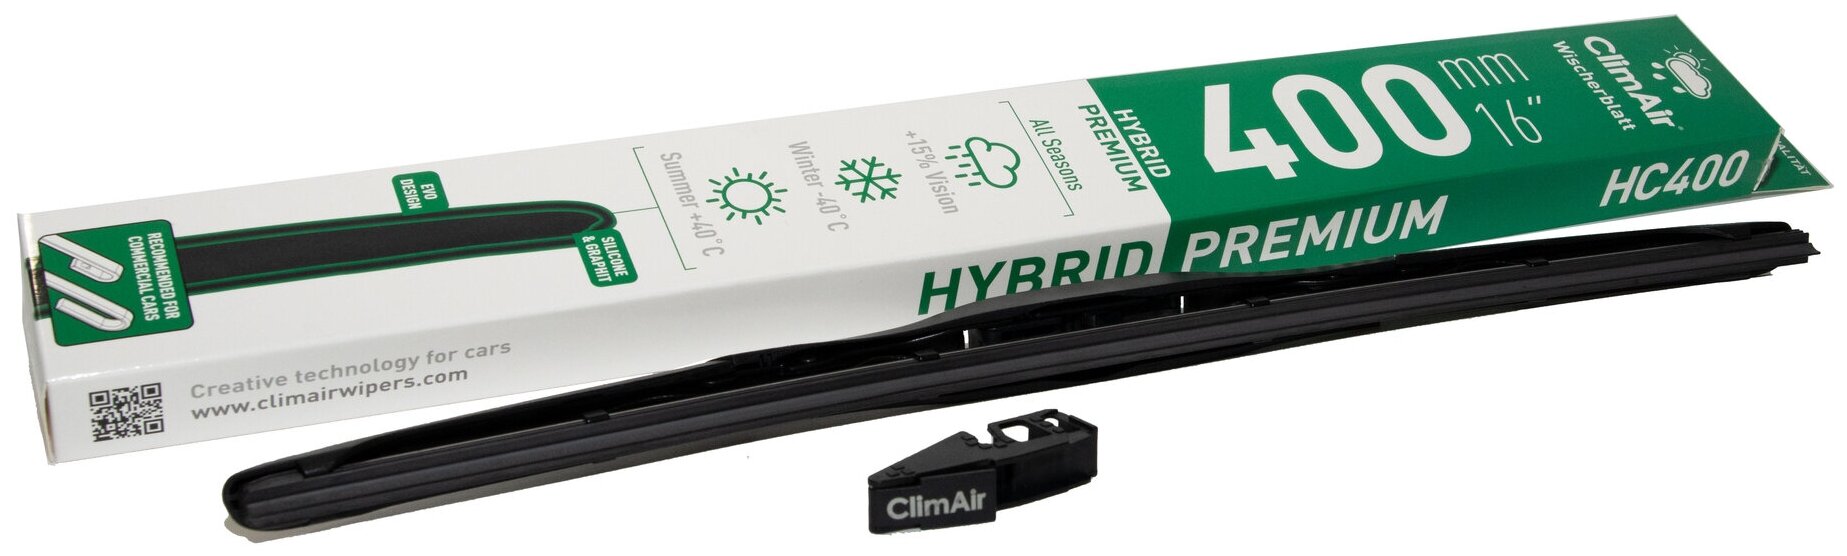 Всесезонная гибридная щетка стеклоочистителя ClimAir HYBRID PREMIUM 16" HC400 (400mm), тип крепления крючок